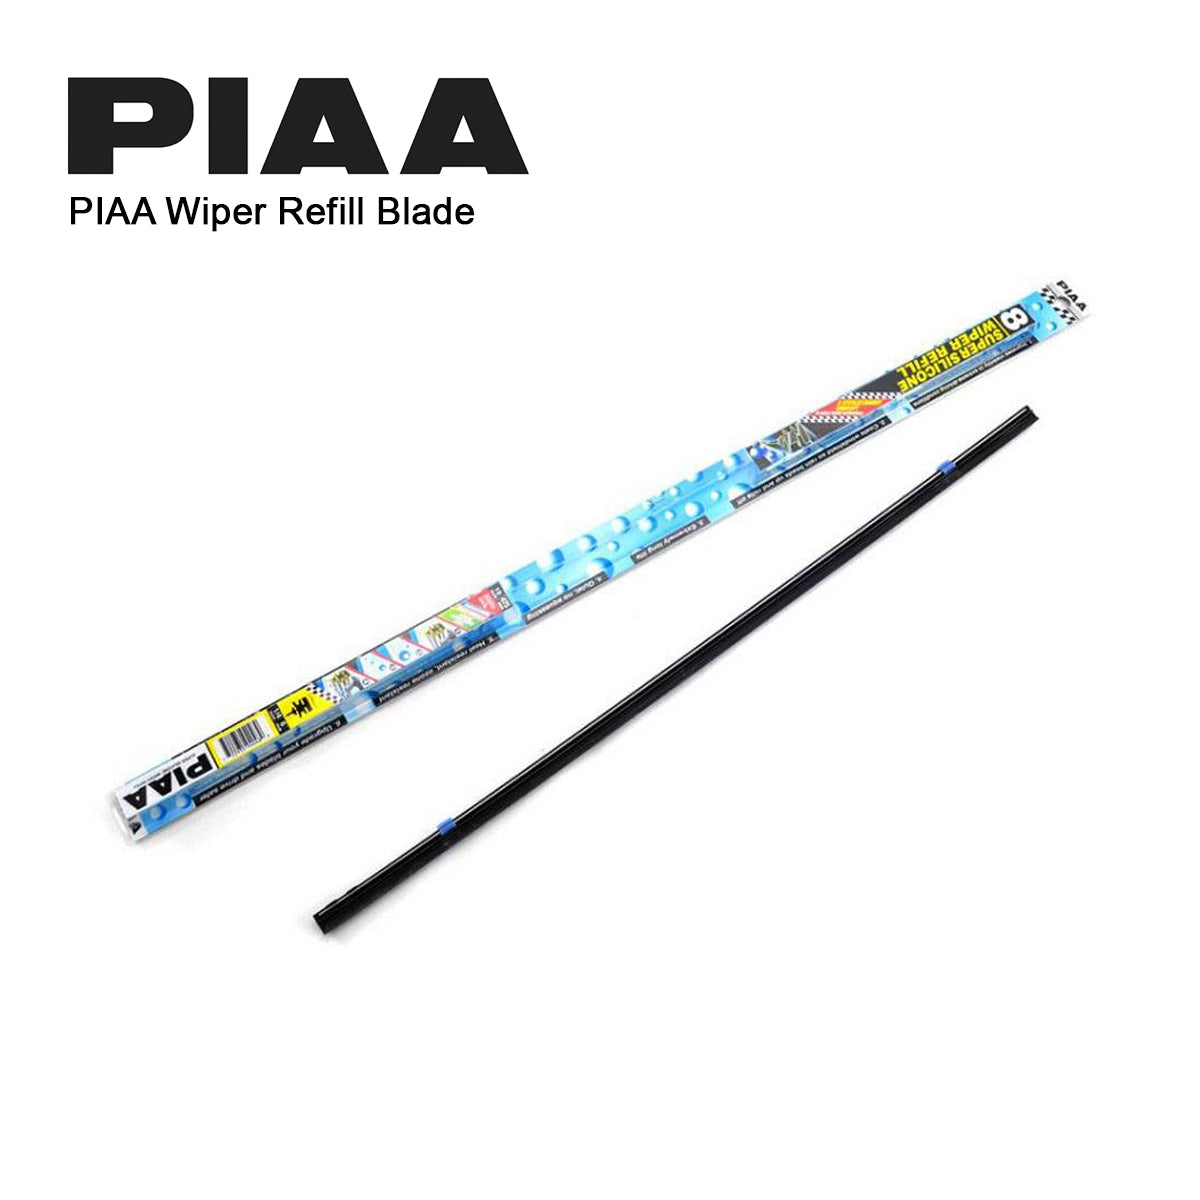 PIAA SILICONE WIPER REFILL for Radix & Aero Vogue Blade ( 16" ) ( 6mm ) (Barcode: 722935940403 )